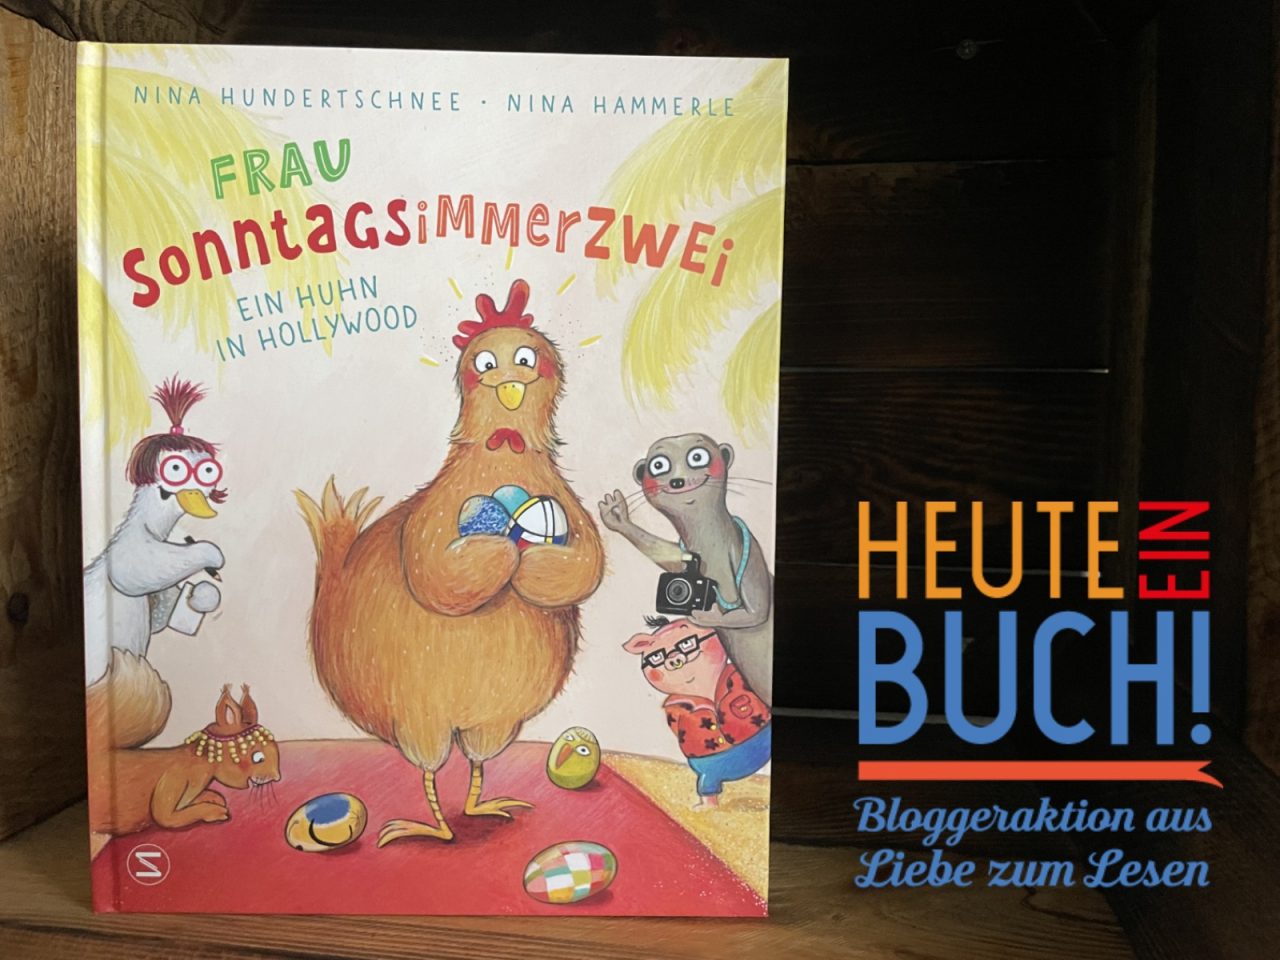 das Bilderbuch "Frau Sonntagsimmerzwei" in einer Holzkiste stehend mit dem "Heute ein Buch"-Logo